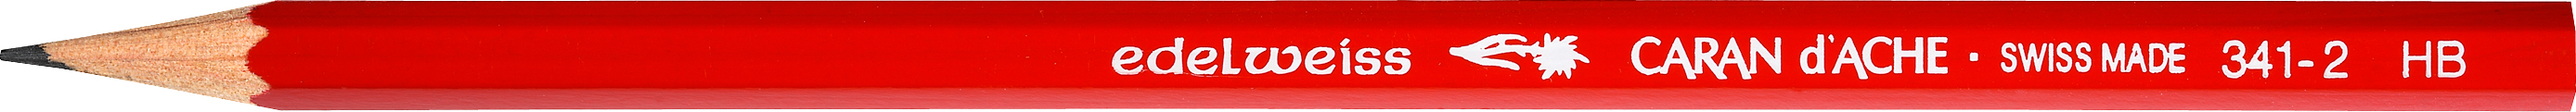 CARAN D'ACHE Crayon Ecolier Edelweiss HB 341.272 rouge